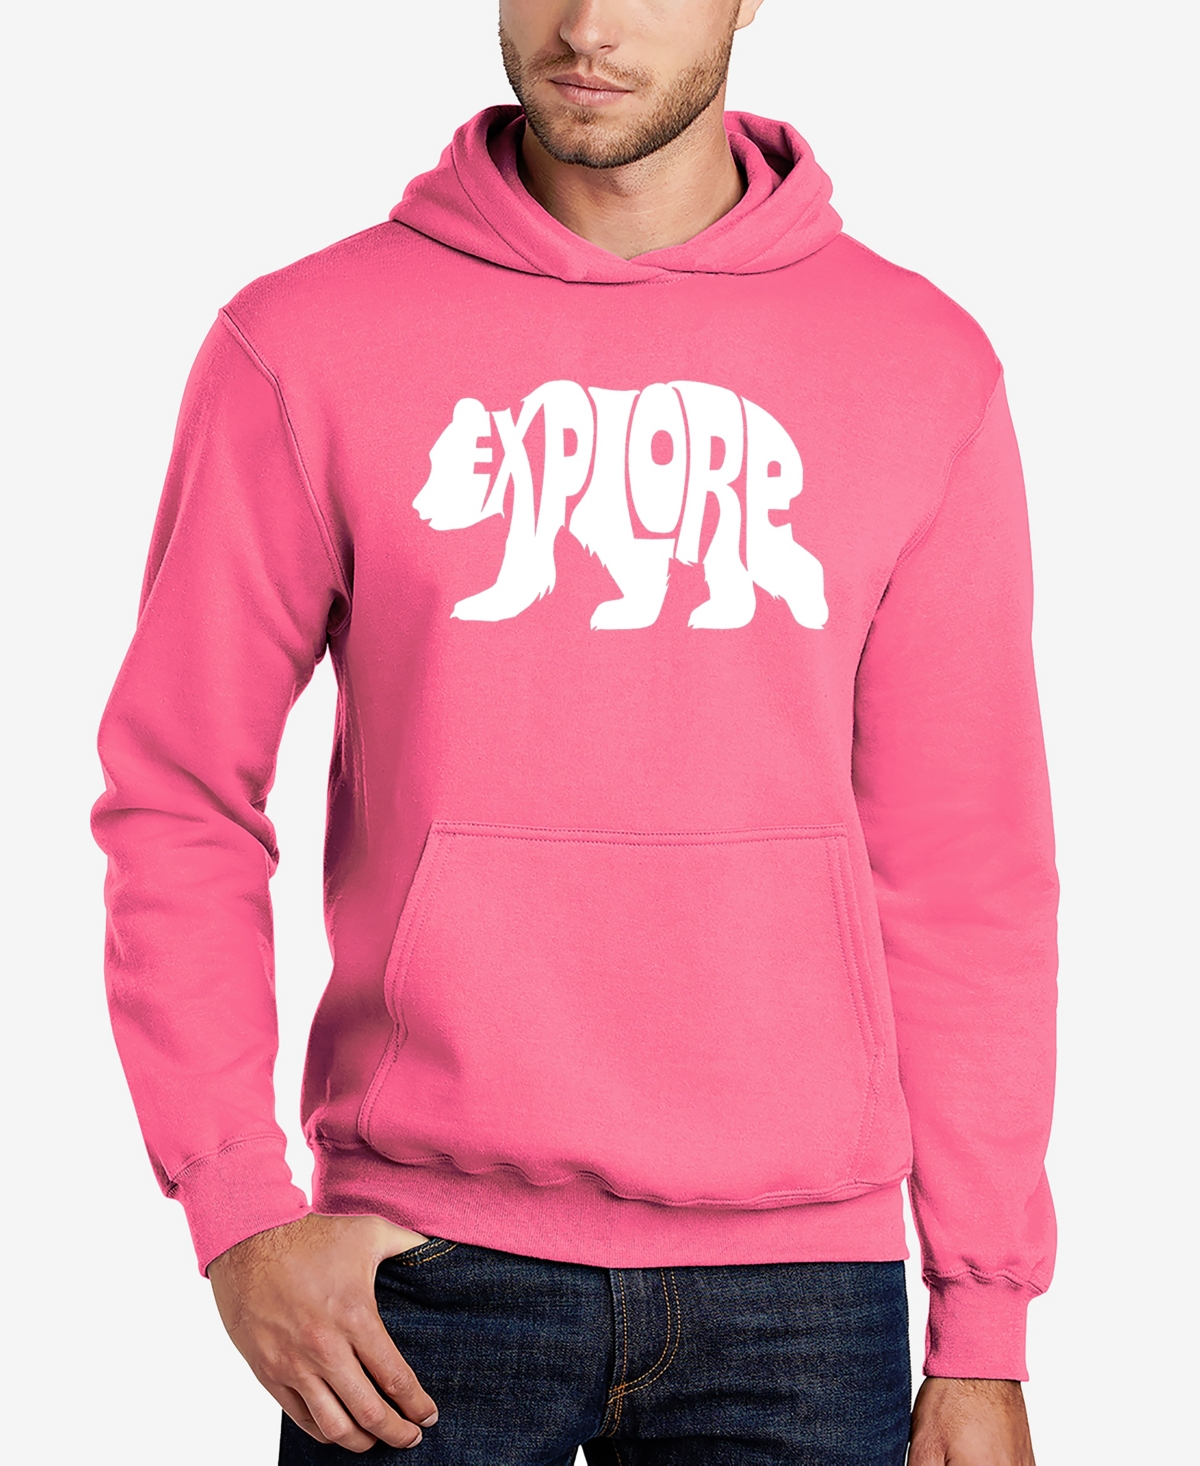 Explore - Men's Word Art Hooded Sweatshirt - Pink